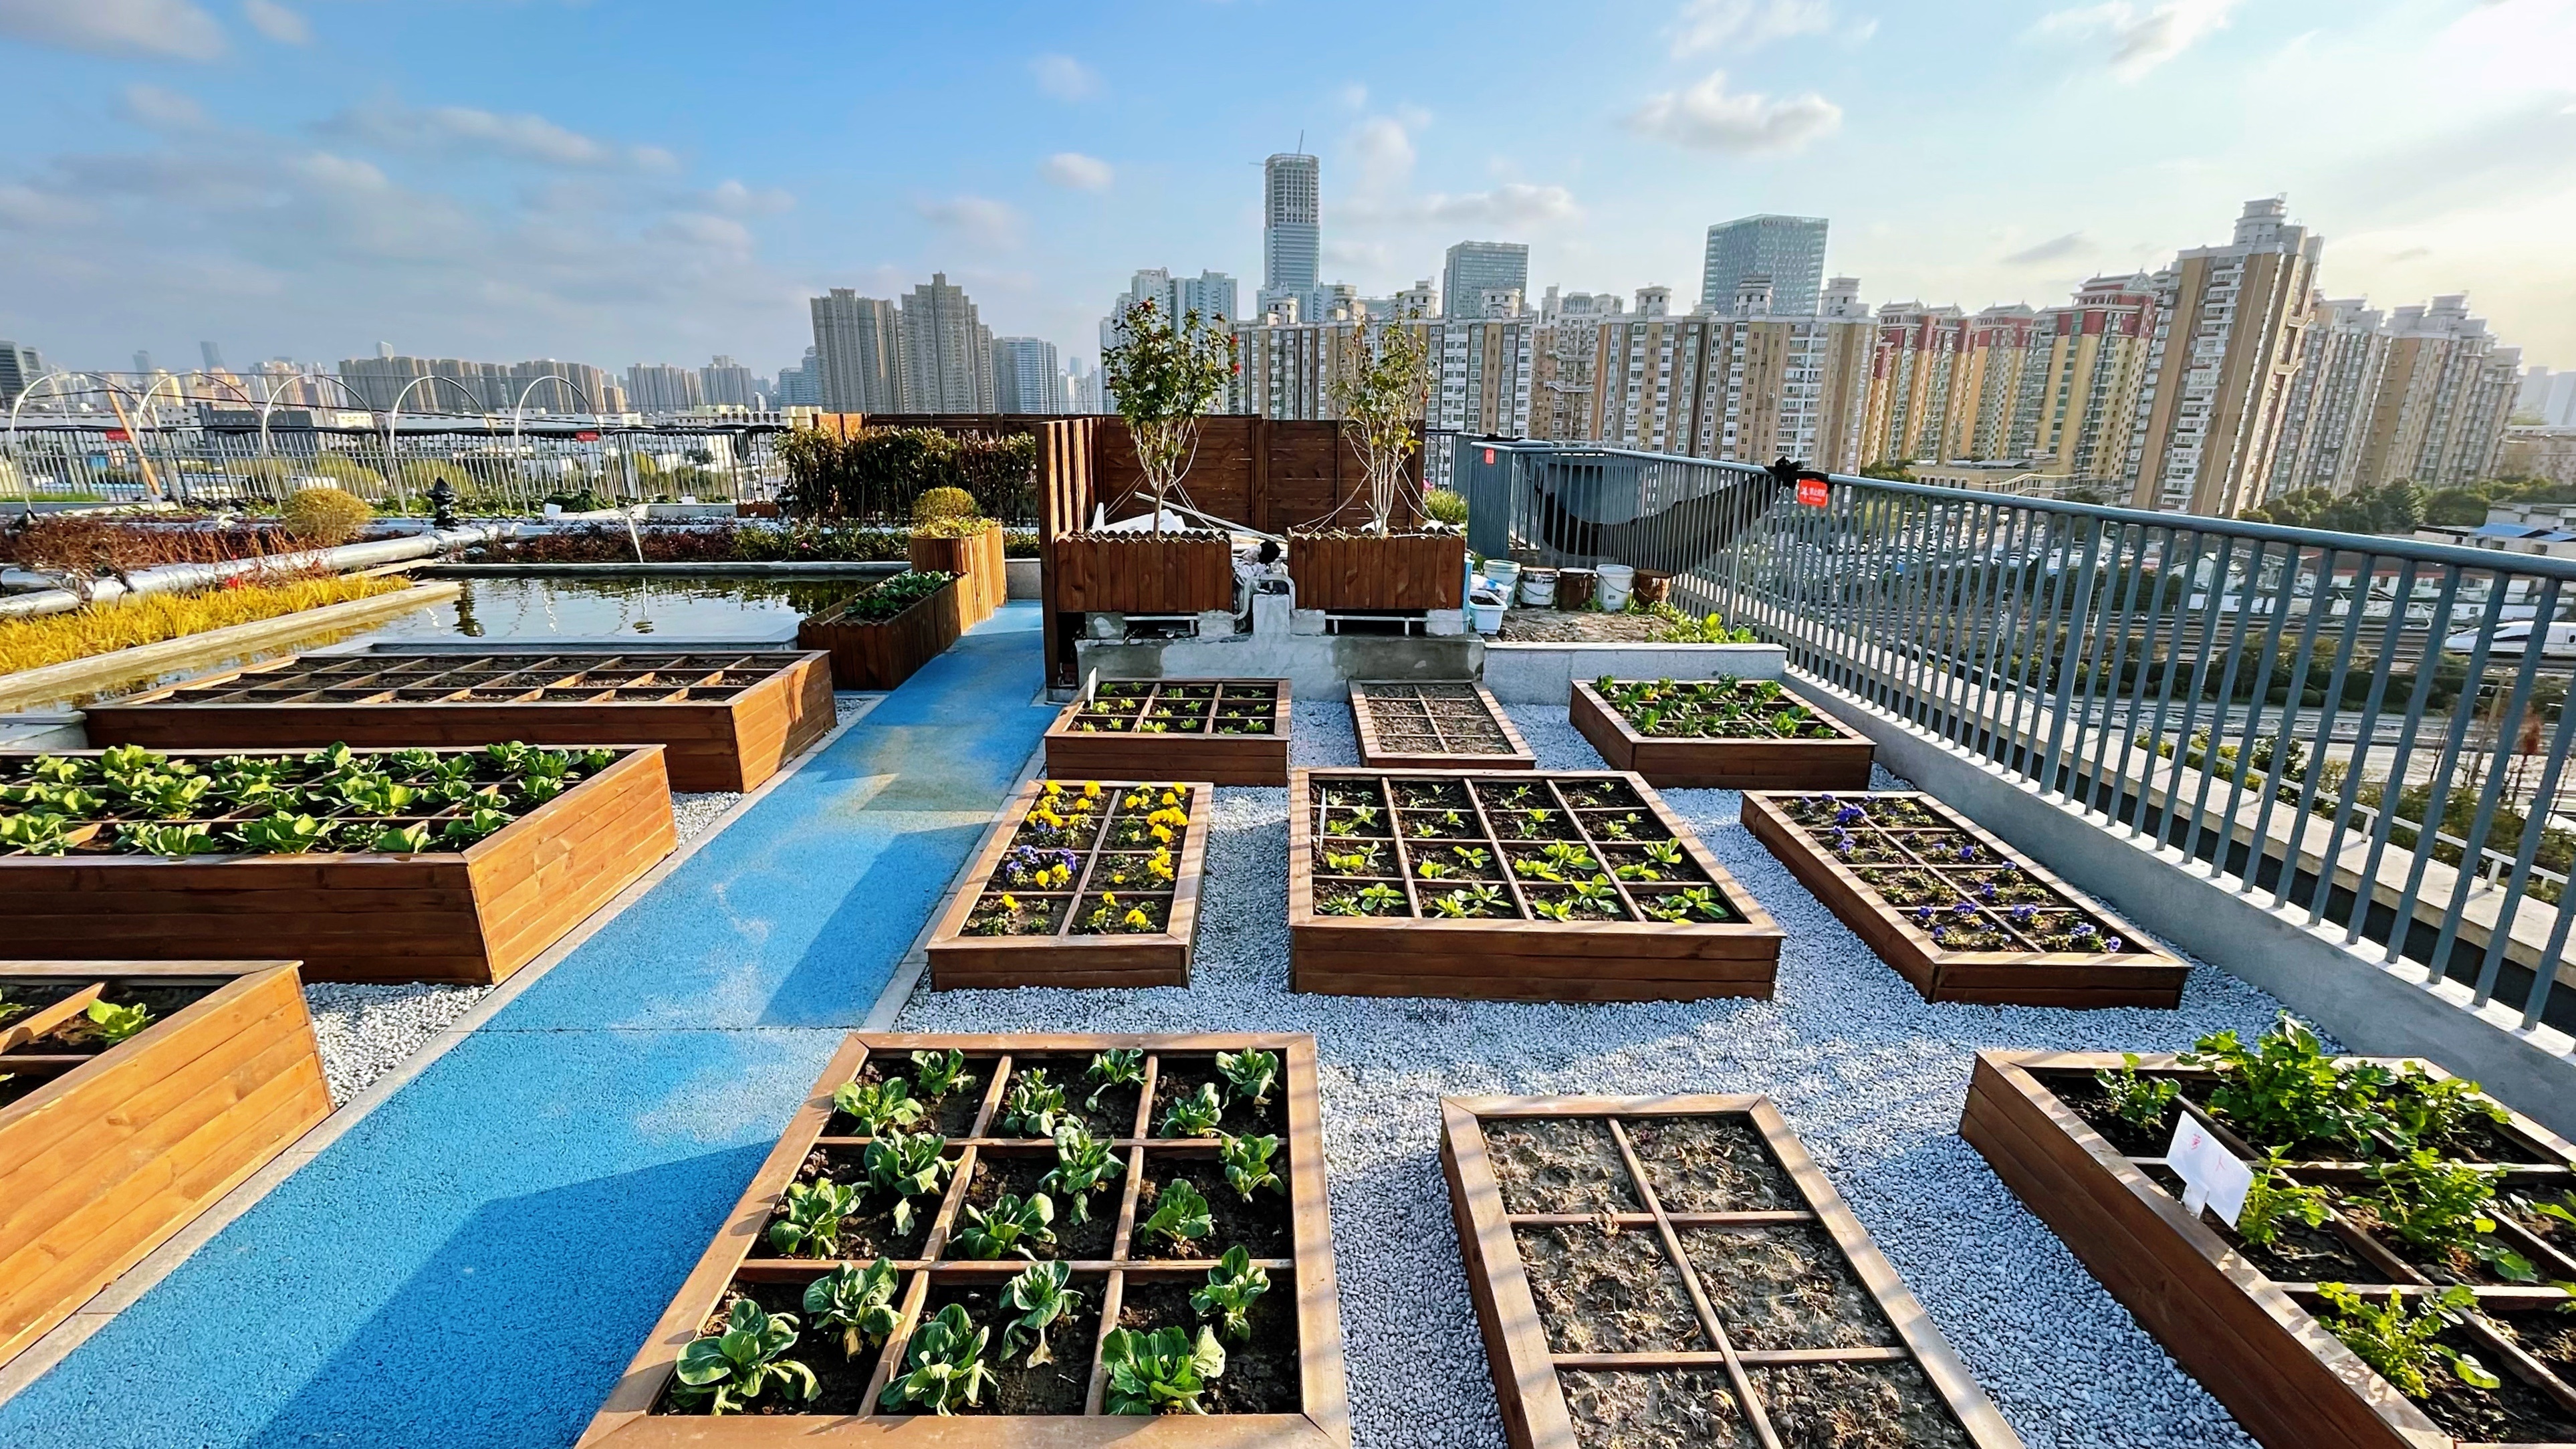 普陀这里有个屋顶上的城市花园,还能体验种菜,养鱼的农业课?